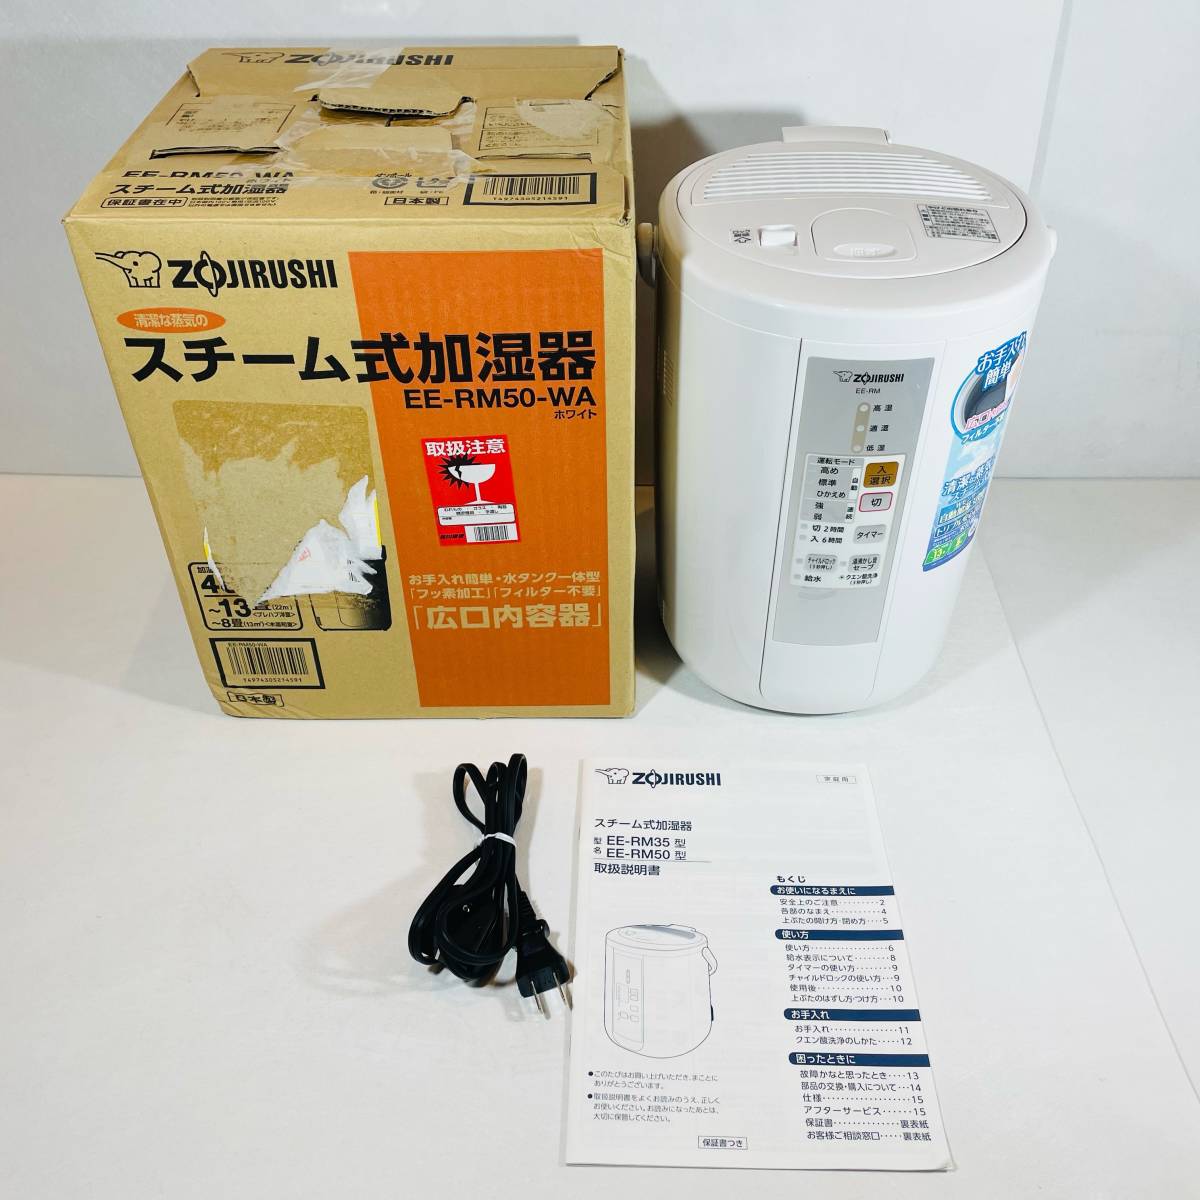 お値打ち品 ZOJIRUSHI EE-RN50(WA) WHITE - 冷暖房/空調